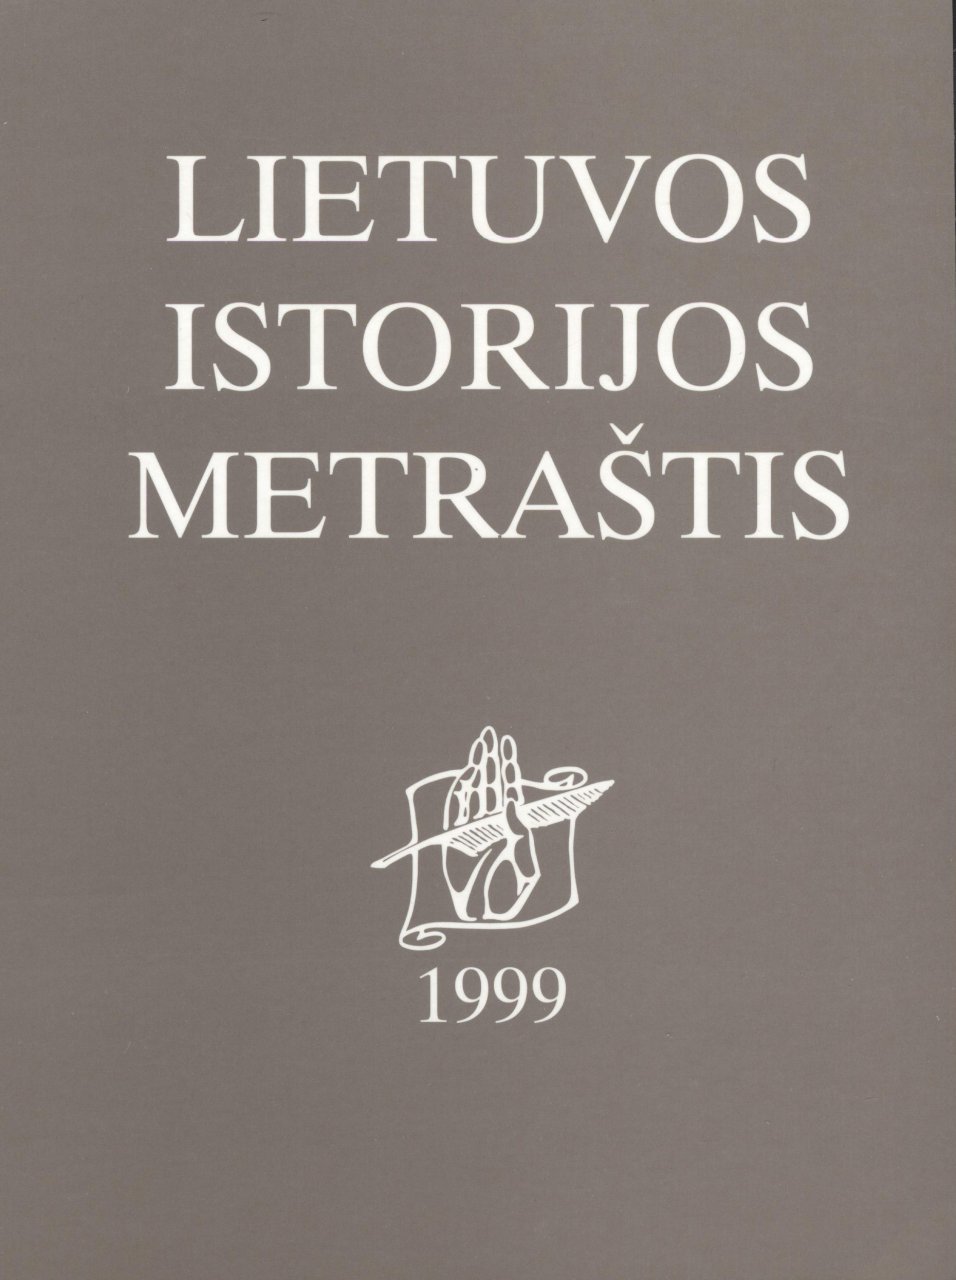 Lietuvos istorijos metraštis 1999 metai 